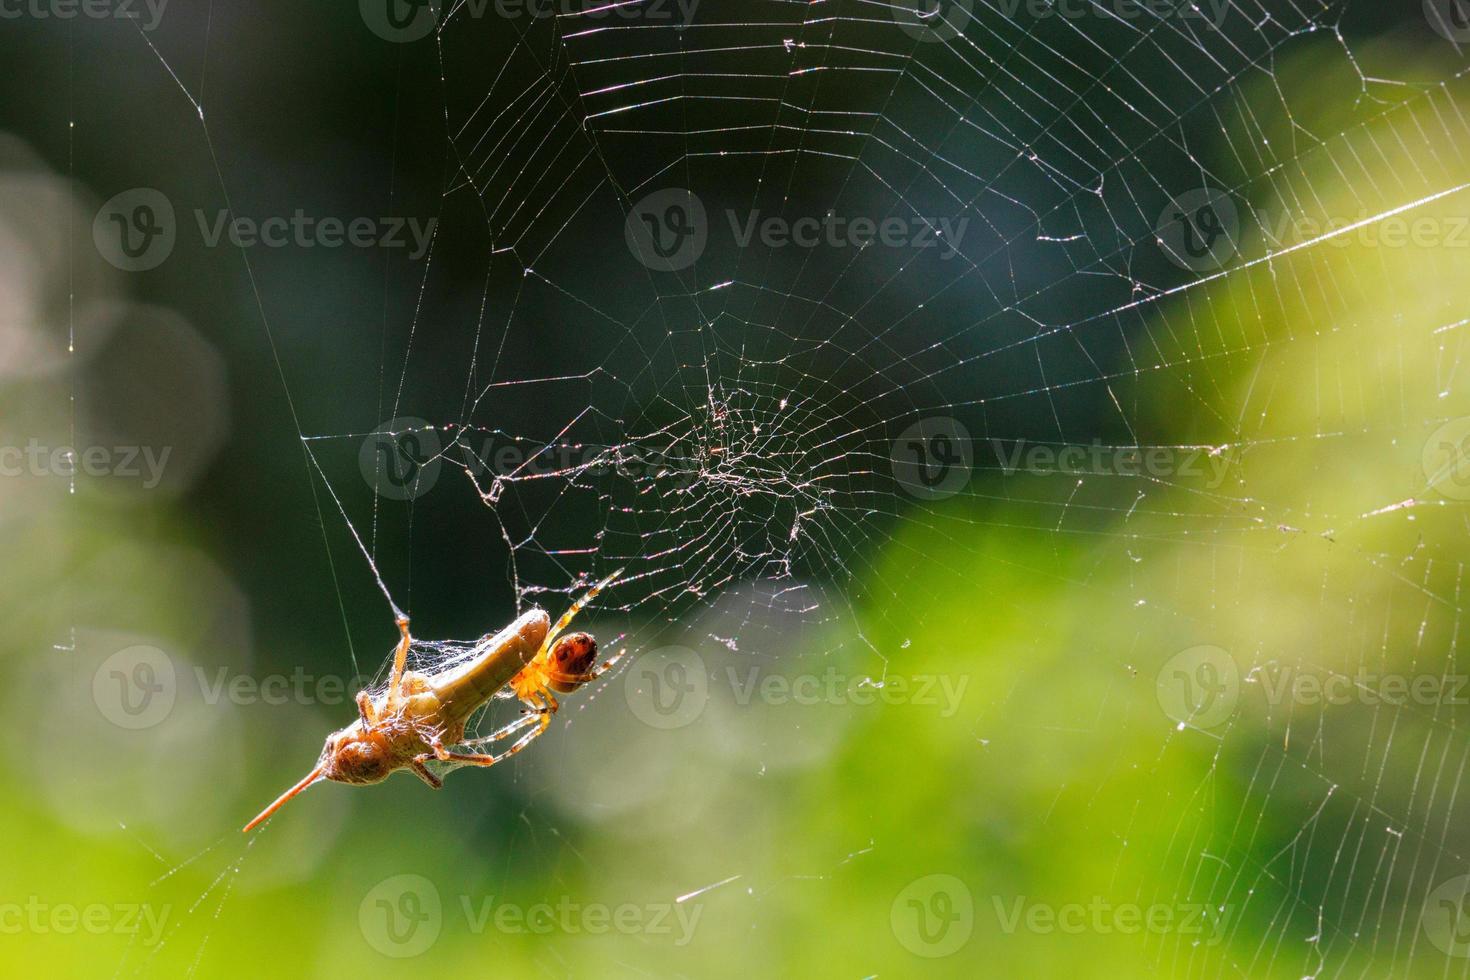 l'araignée a attrapé une sauterelle dans sa toile radiale ronde. photo